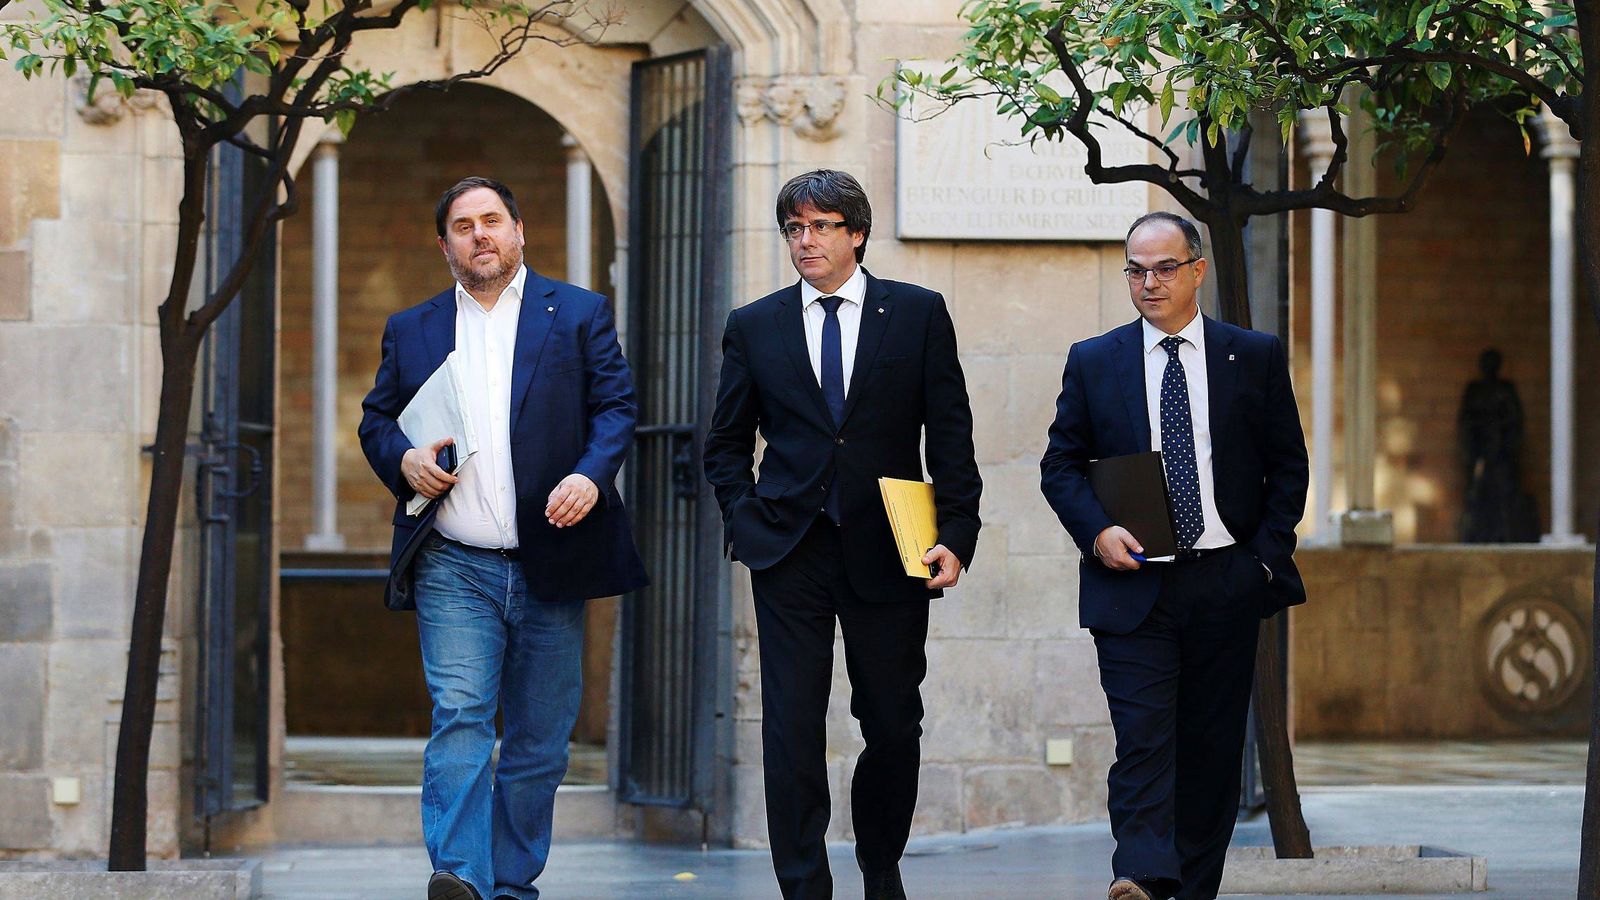 Foto: El presidente de la Generalitat, Carles Puigdemont (c), su vicepresidente, Oriol Junqueras (i) y jordi Turull (d). (EFE)